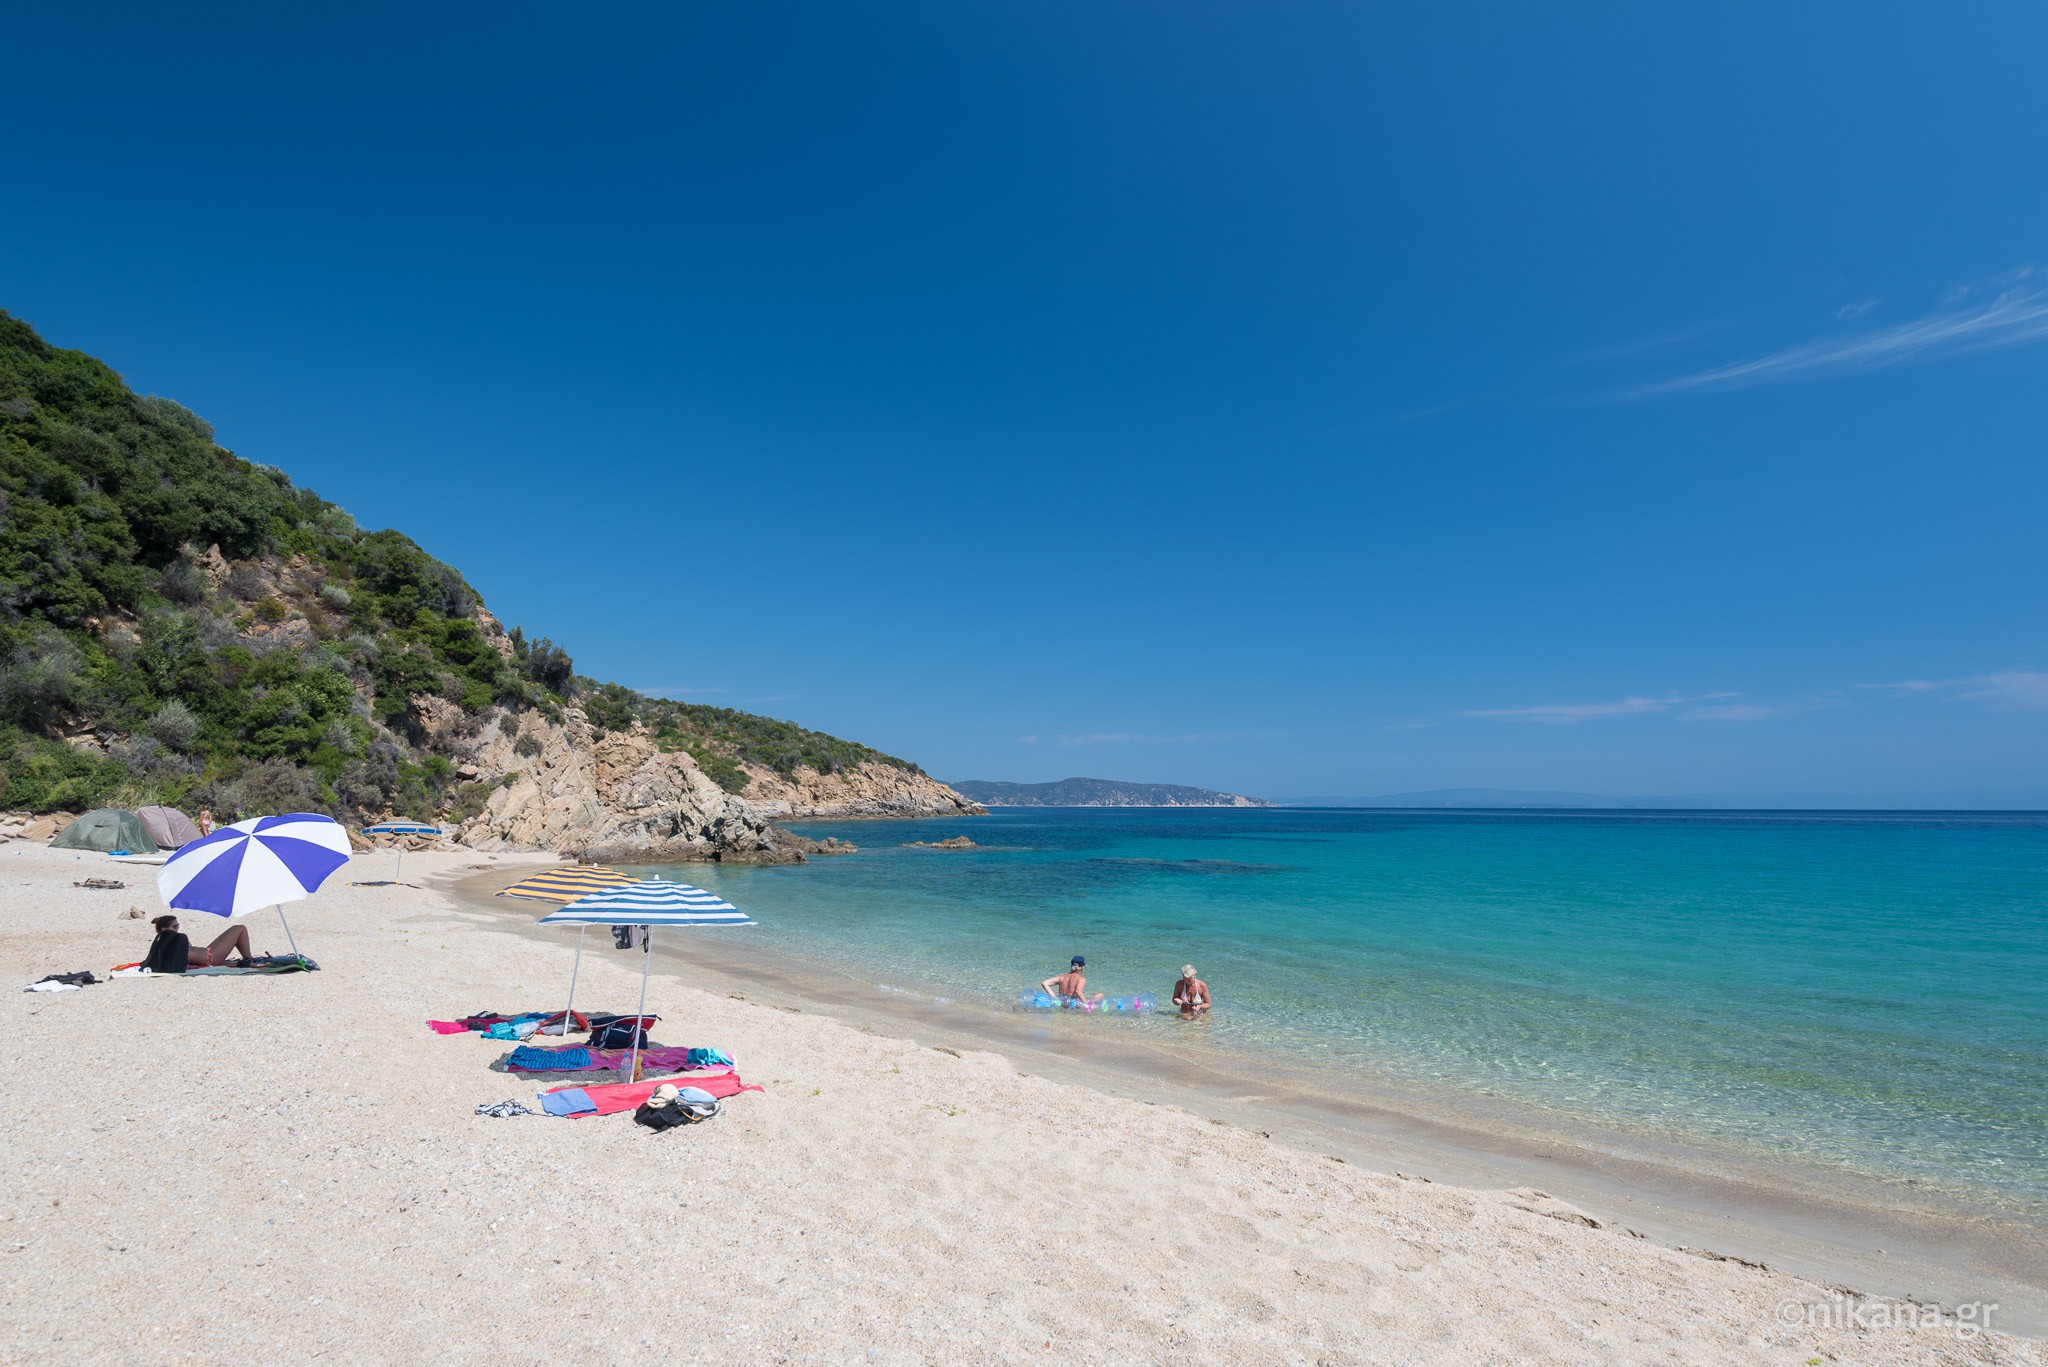 Beaches in the area of Pyrgadikia - Sithonia beaches| Nikana.gr